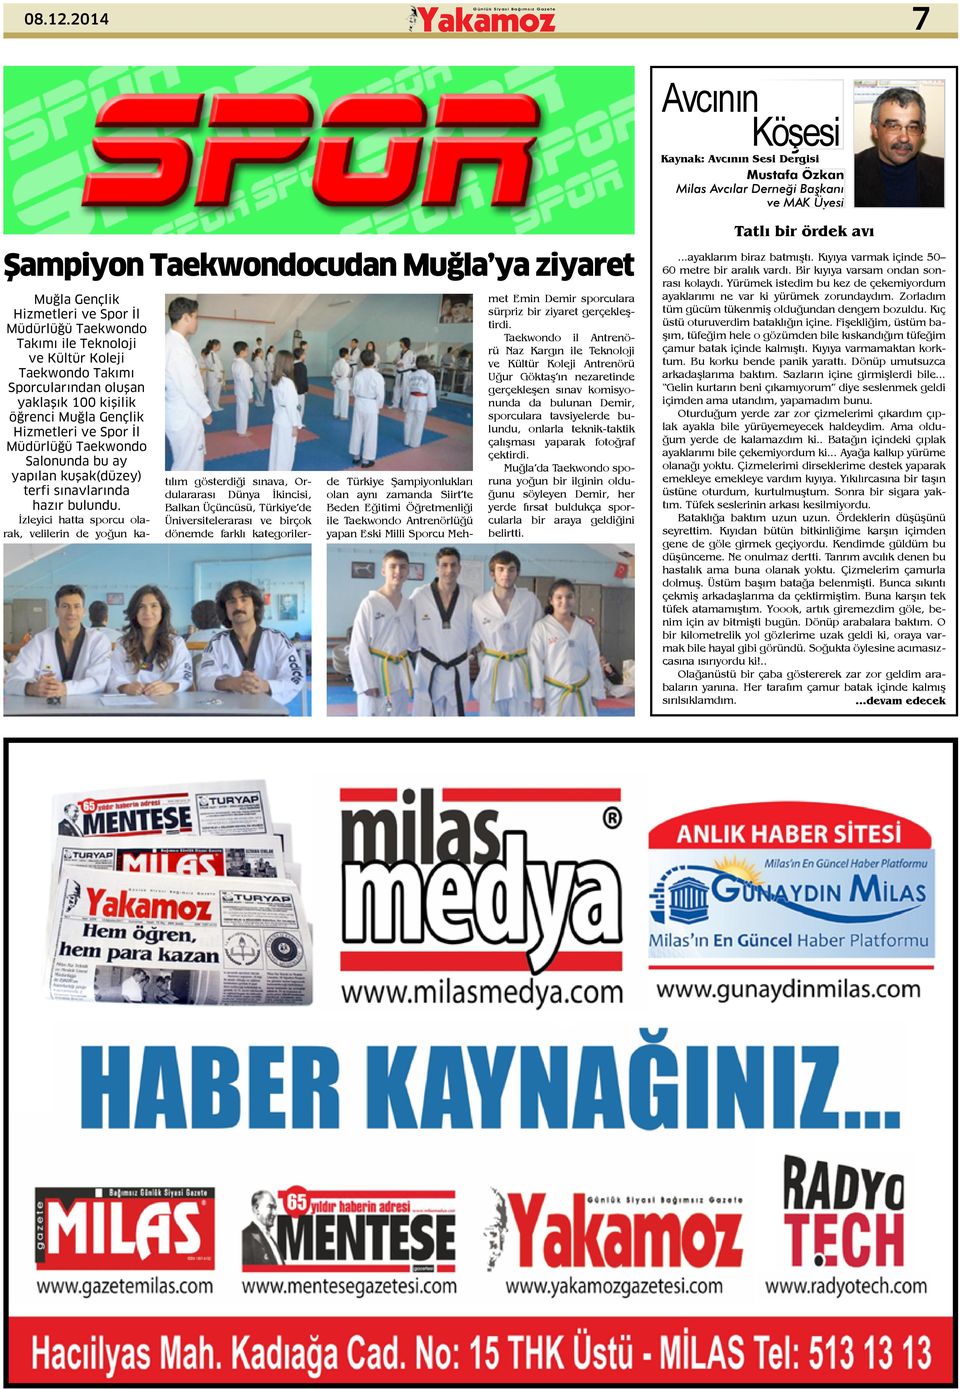 Taekwondo Takımı ile Teknoloji ve Kültür Koleji Taekwondo Takımı Sporcularından oluşan yaklaşık 100 kişilik öğrenci Muğla Gençlik Hizmetleri ve Spor İl Müdürlüğü Taekwondo Salonunda bu ay yapılan